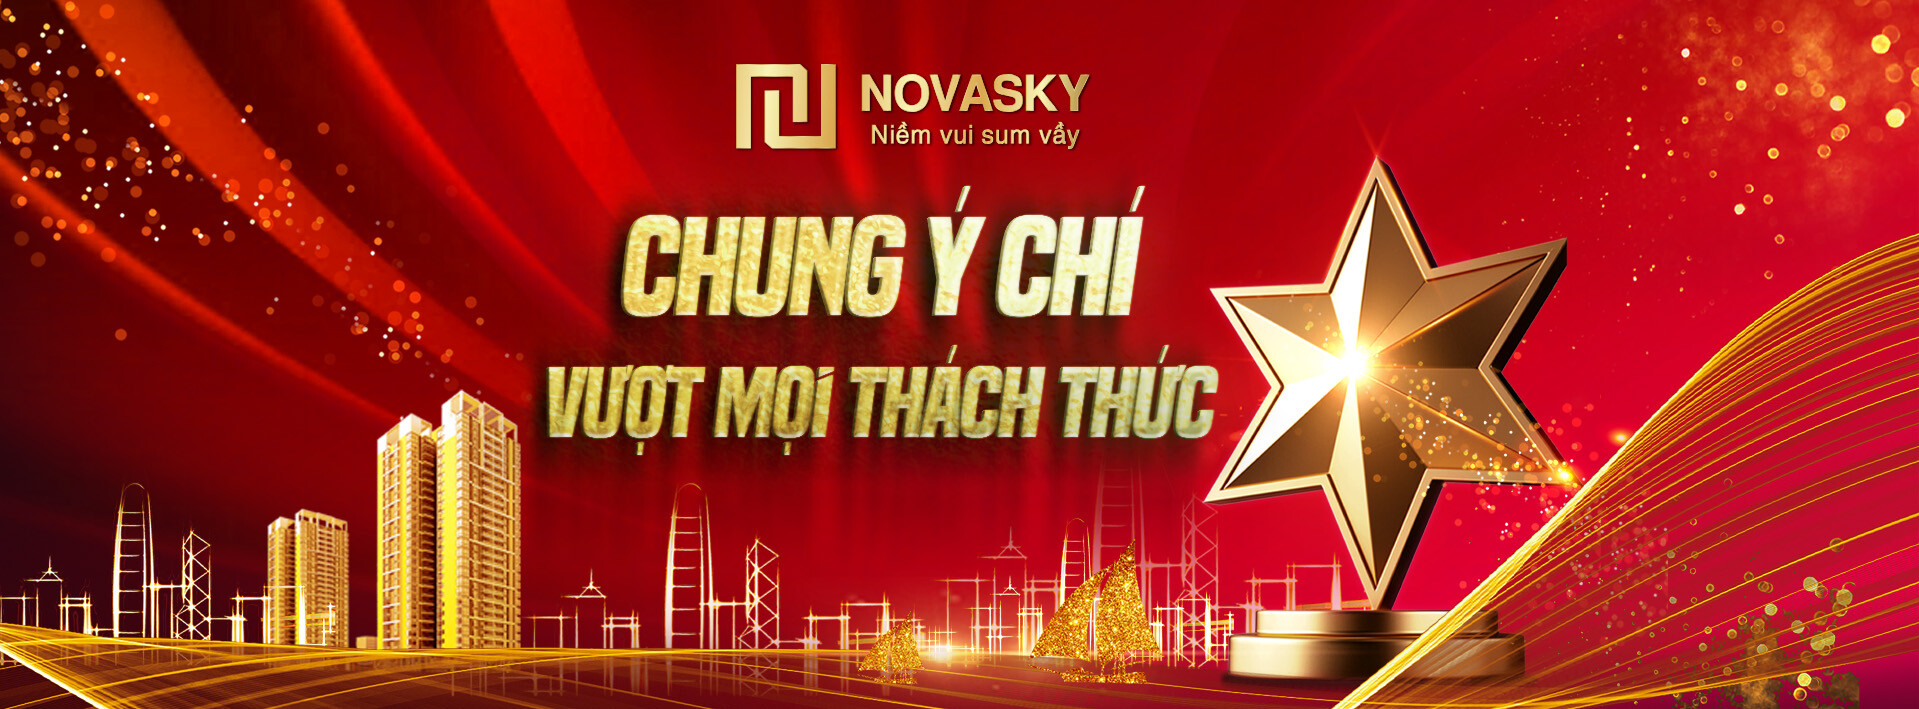 Cover image for Bất Động Sản Novasky